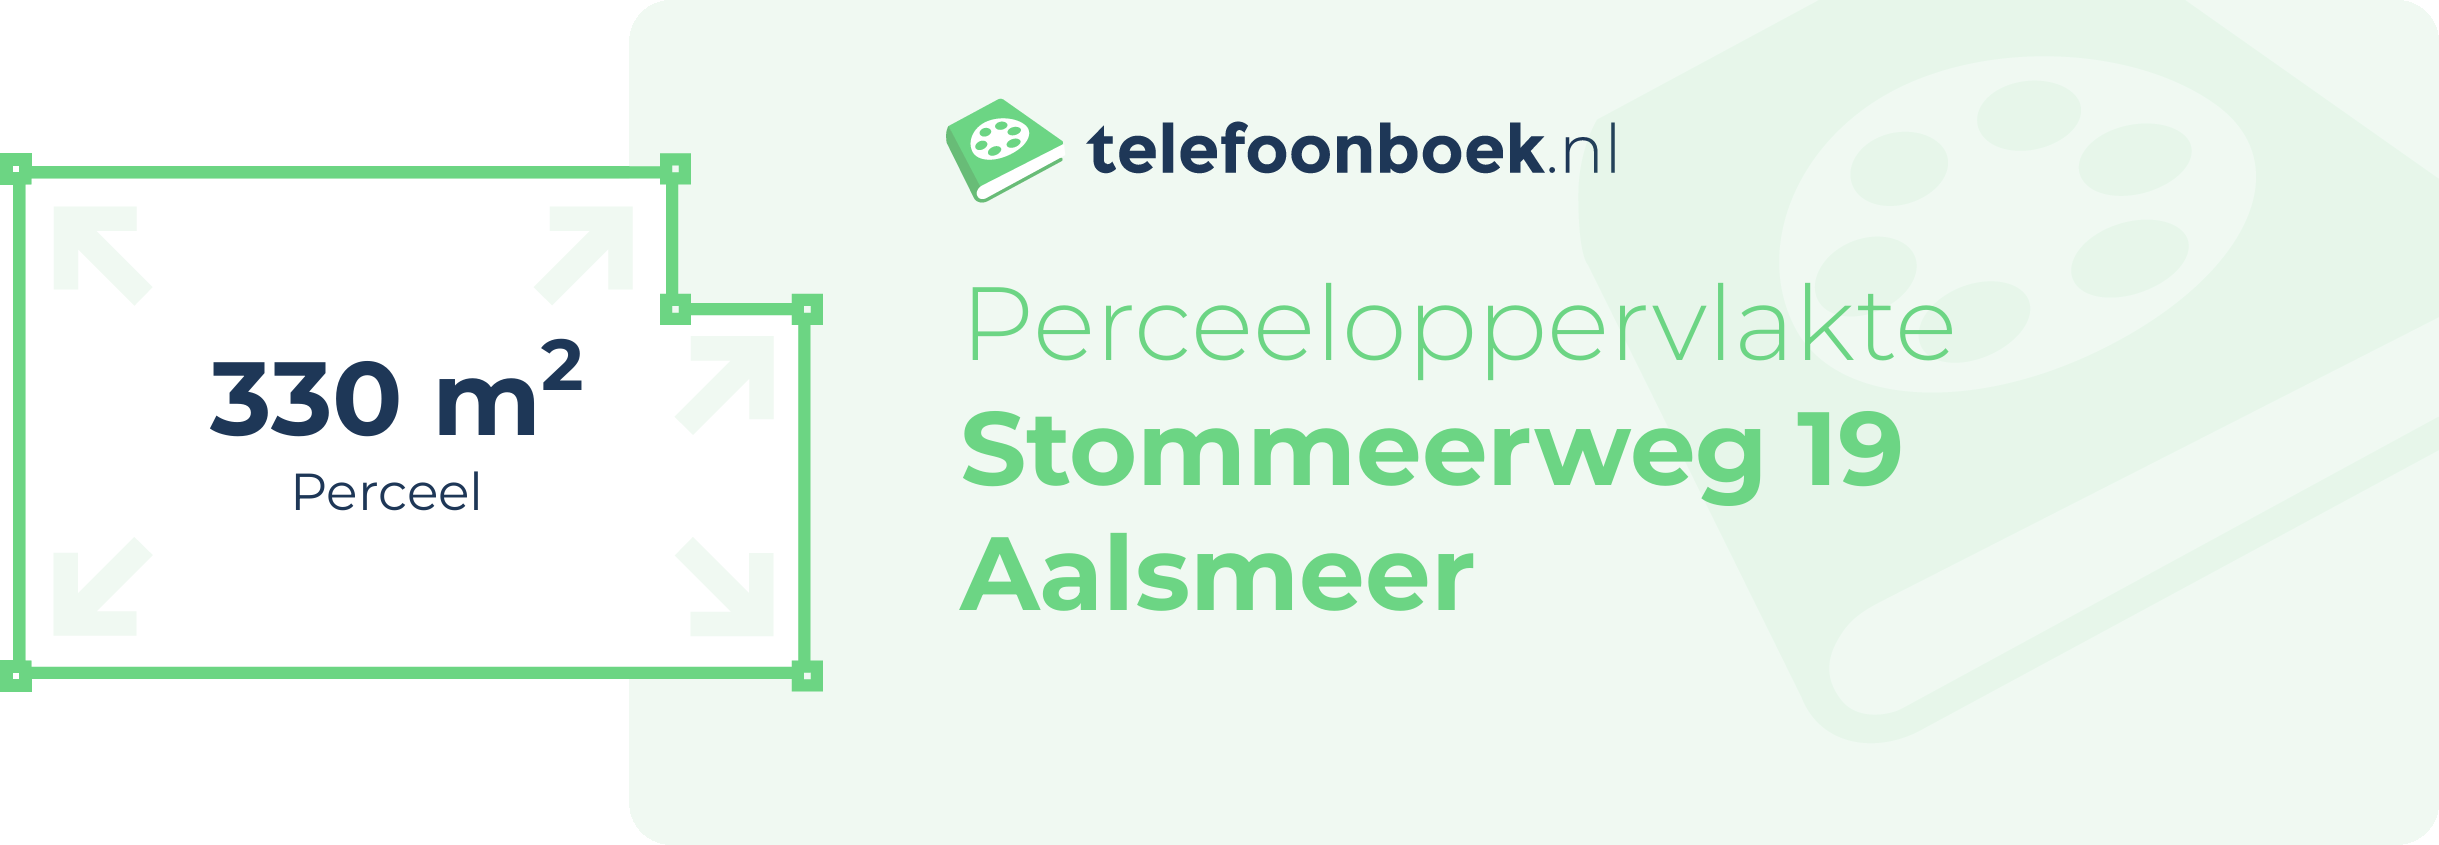 Perceeloppervlakte Stommeerweg 19 Aalsmeer